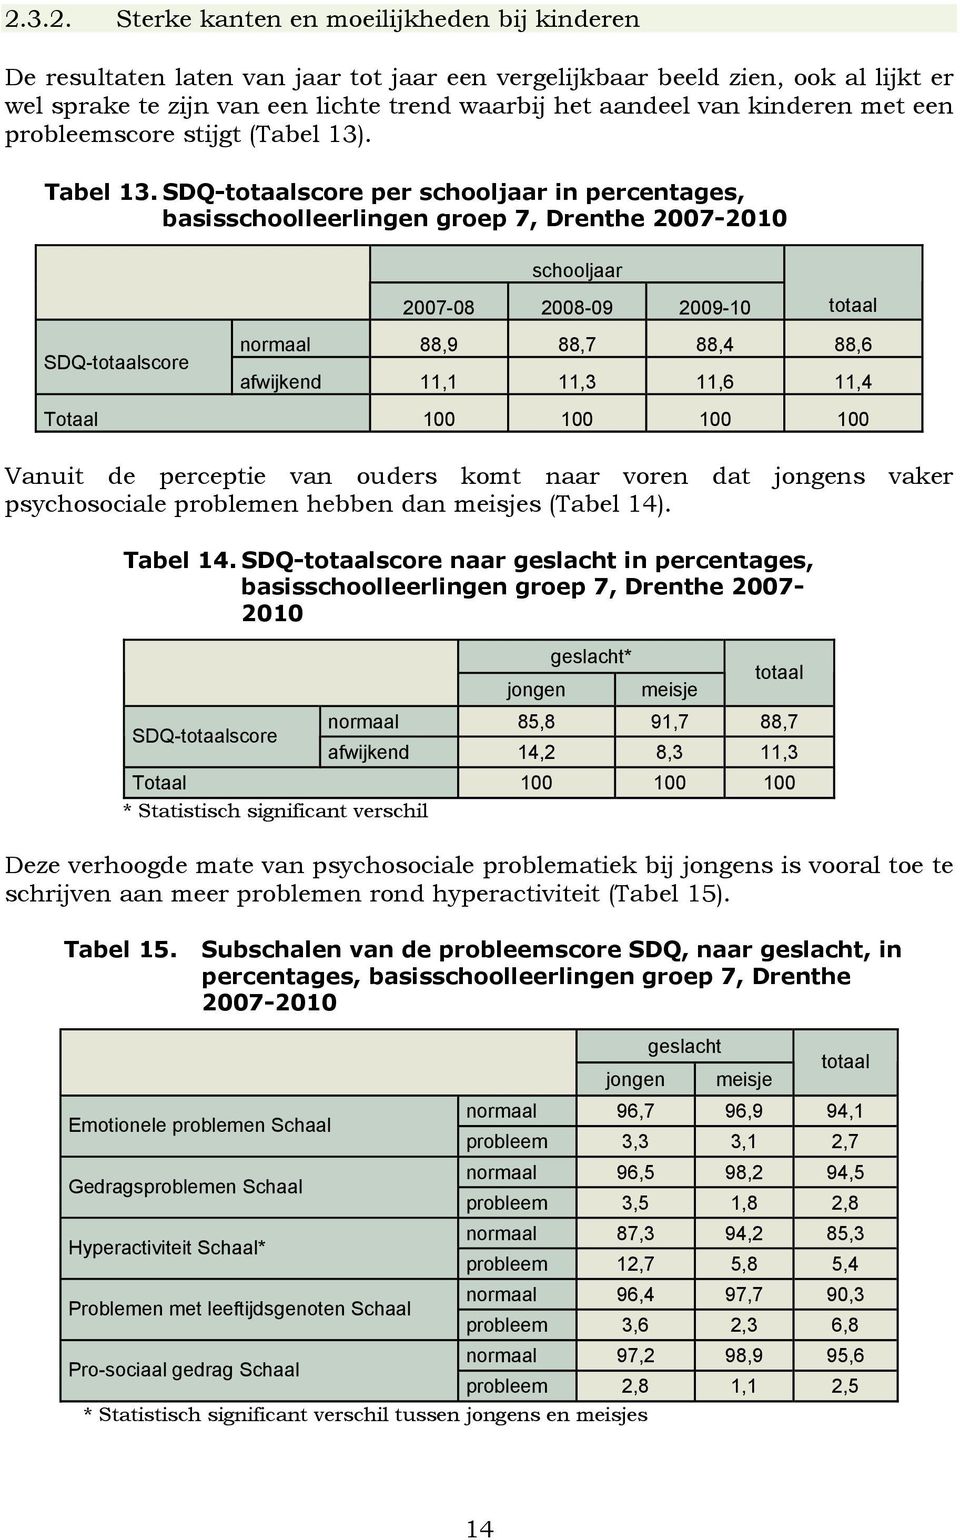 SDQ-totaalscore per schooljaar in percentages, basisschoolleerlingen groep 7, Drenthe 2007-2010 SDQ-totaalscore schooljaar 2007-08 2008-09 2009-10 totaal normaal 88,9 88,7 88,4 88,6 afwijkend 11,1